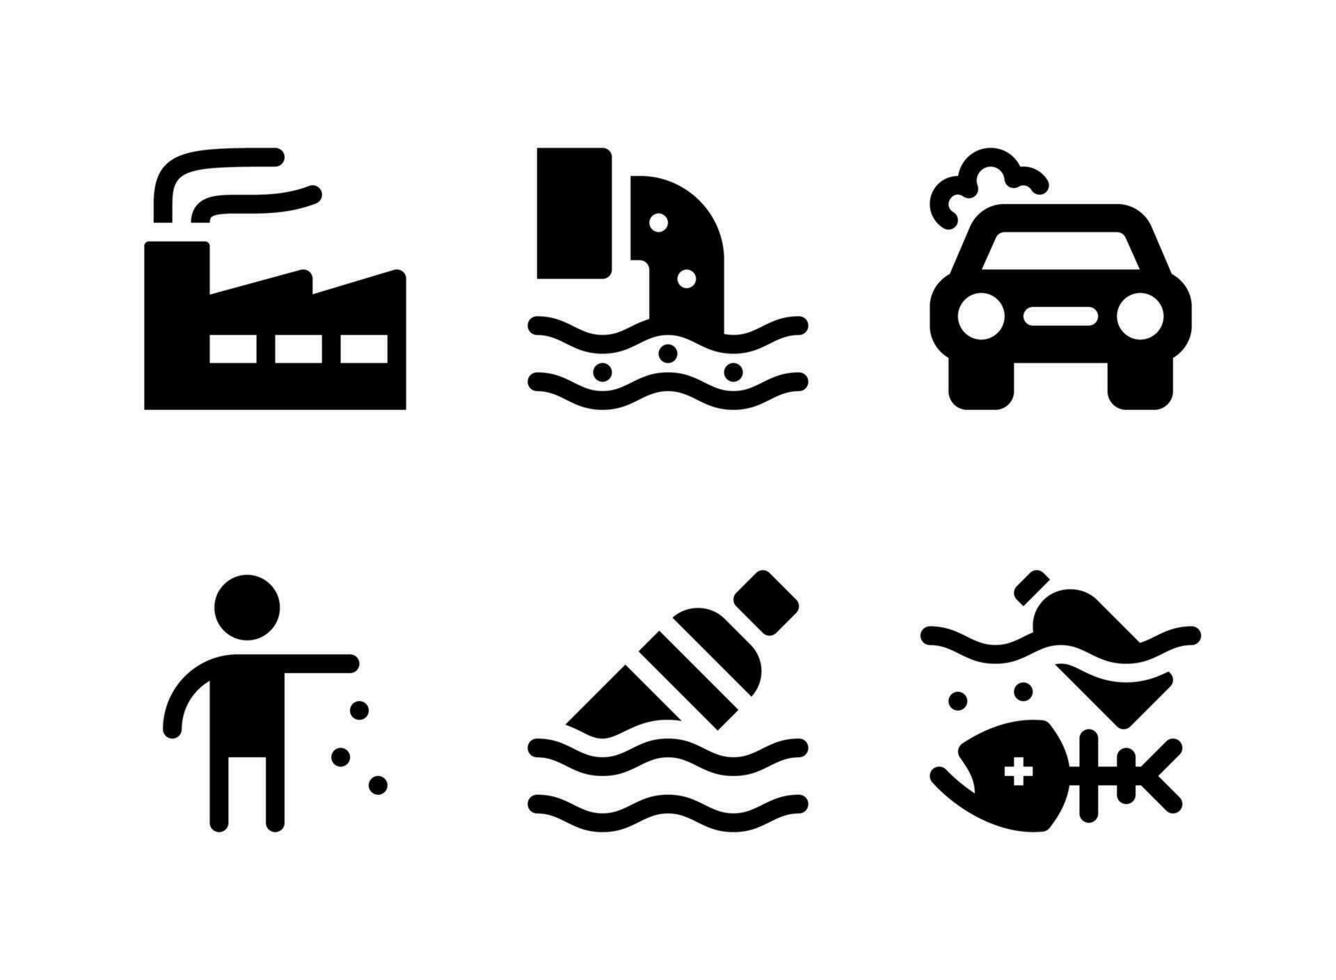 simple conjunto de iconos sólidos vectoriales relacionados con la contaminación. contiene iconos como fábrica, peces muertos, basura, botella flotante y más. vector